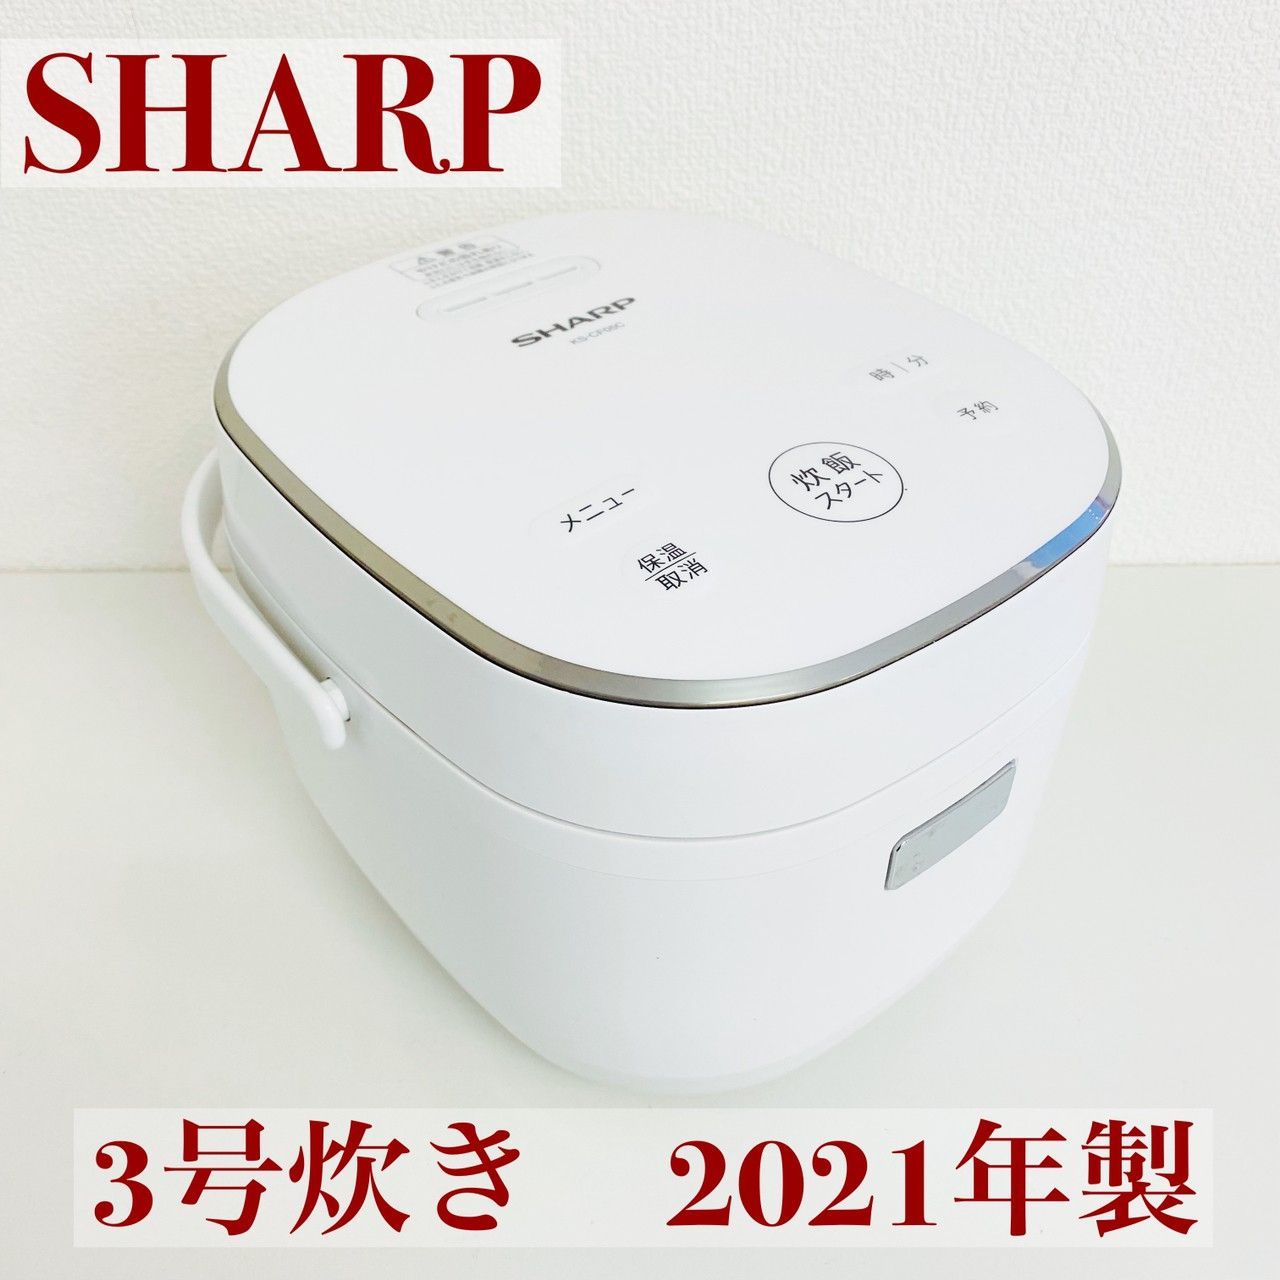 SHARP 炊飯器 3合炊き - 炊飯器・餅つき機